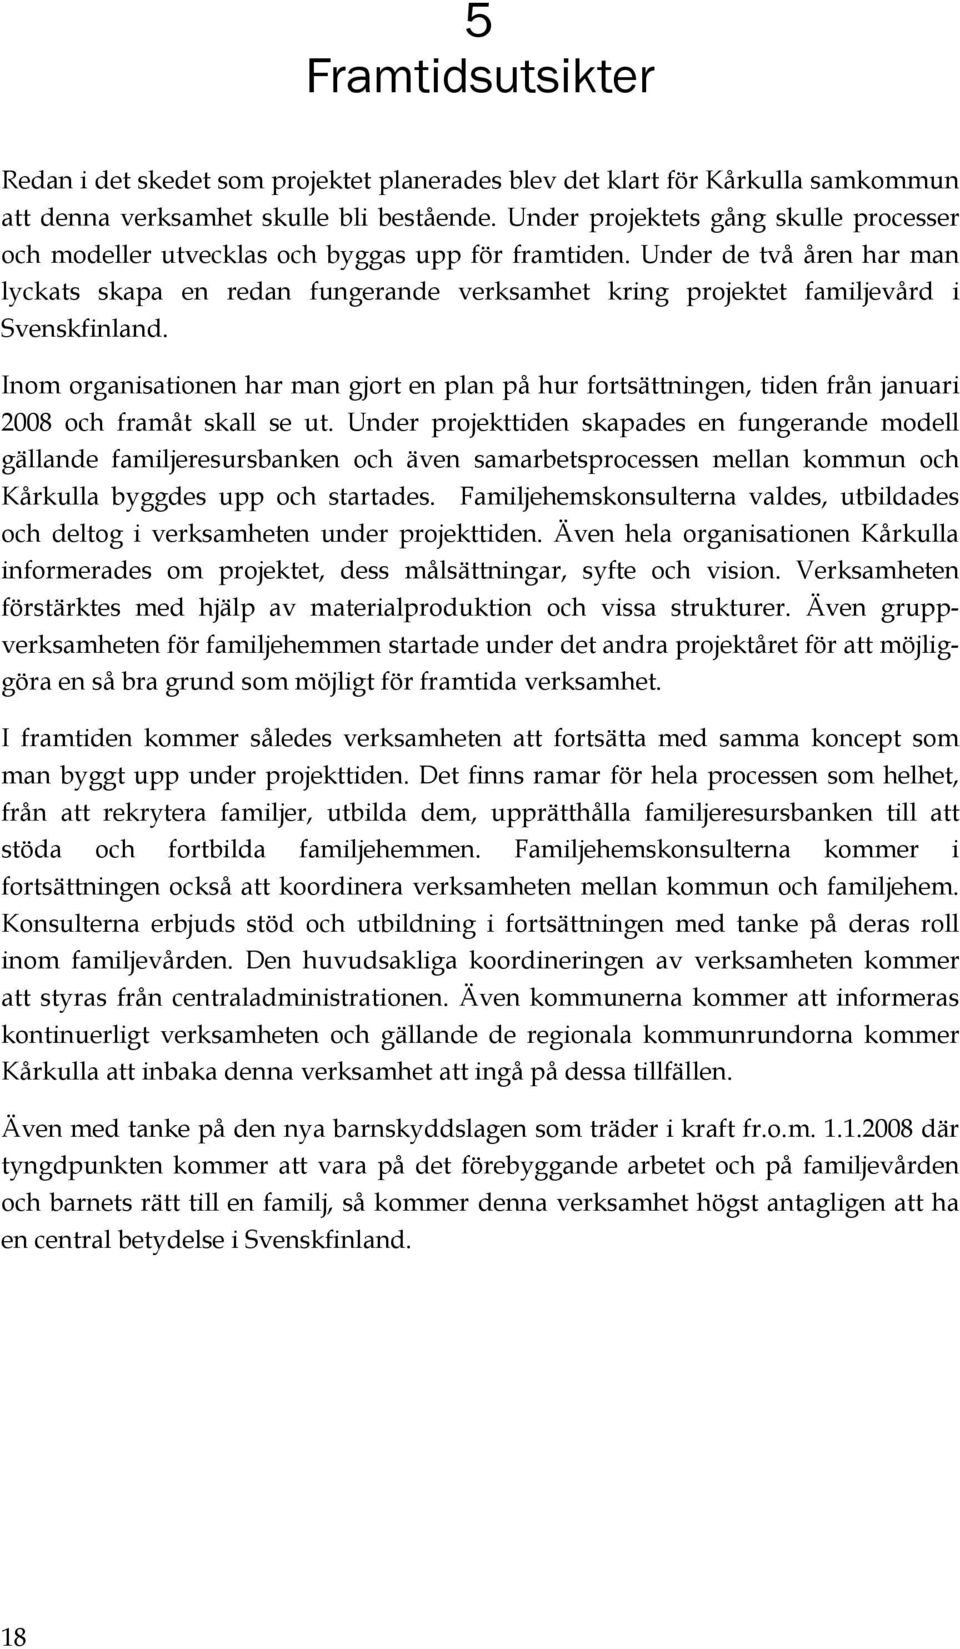 Under de två åren har man lyckats skapa en redan fungerande verksamhet kring projektet familjevård i Svenskfinland.